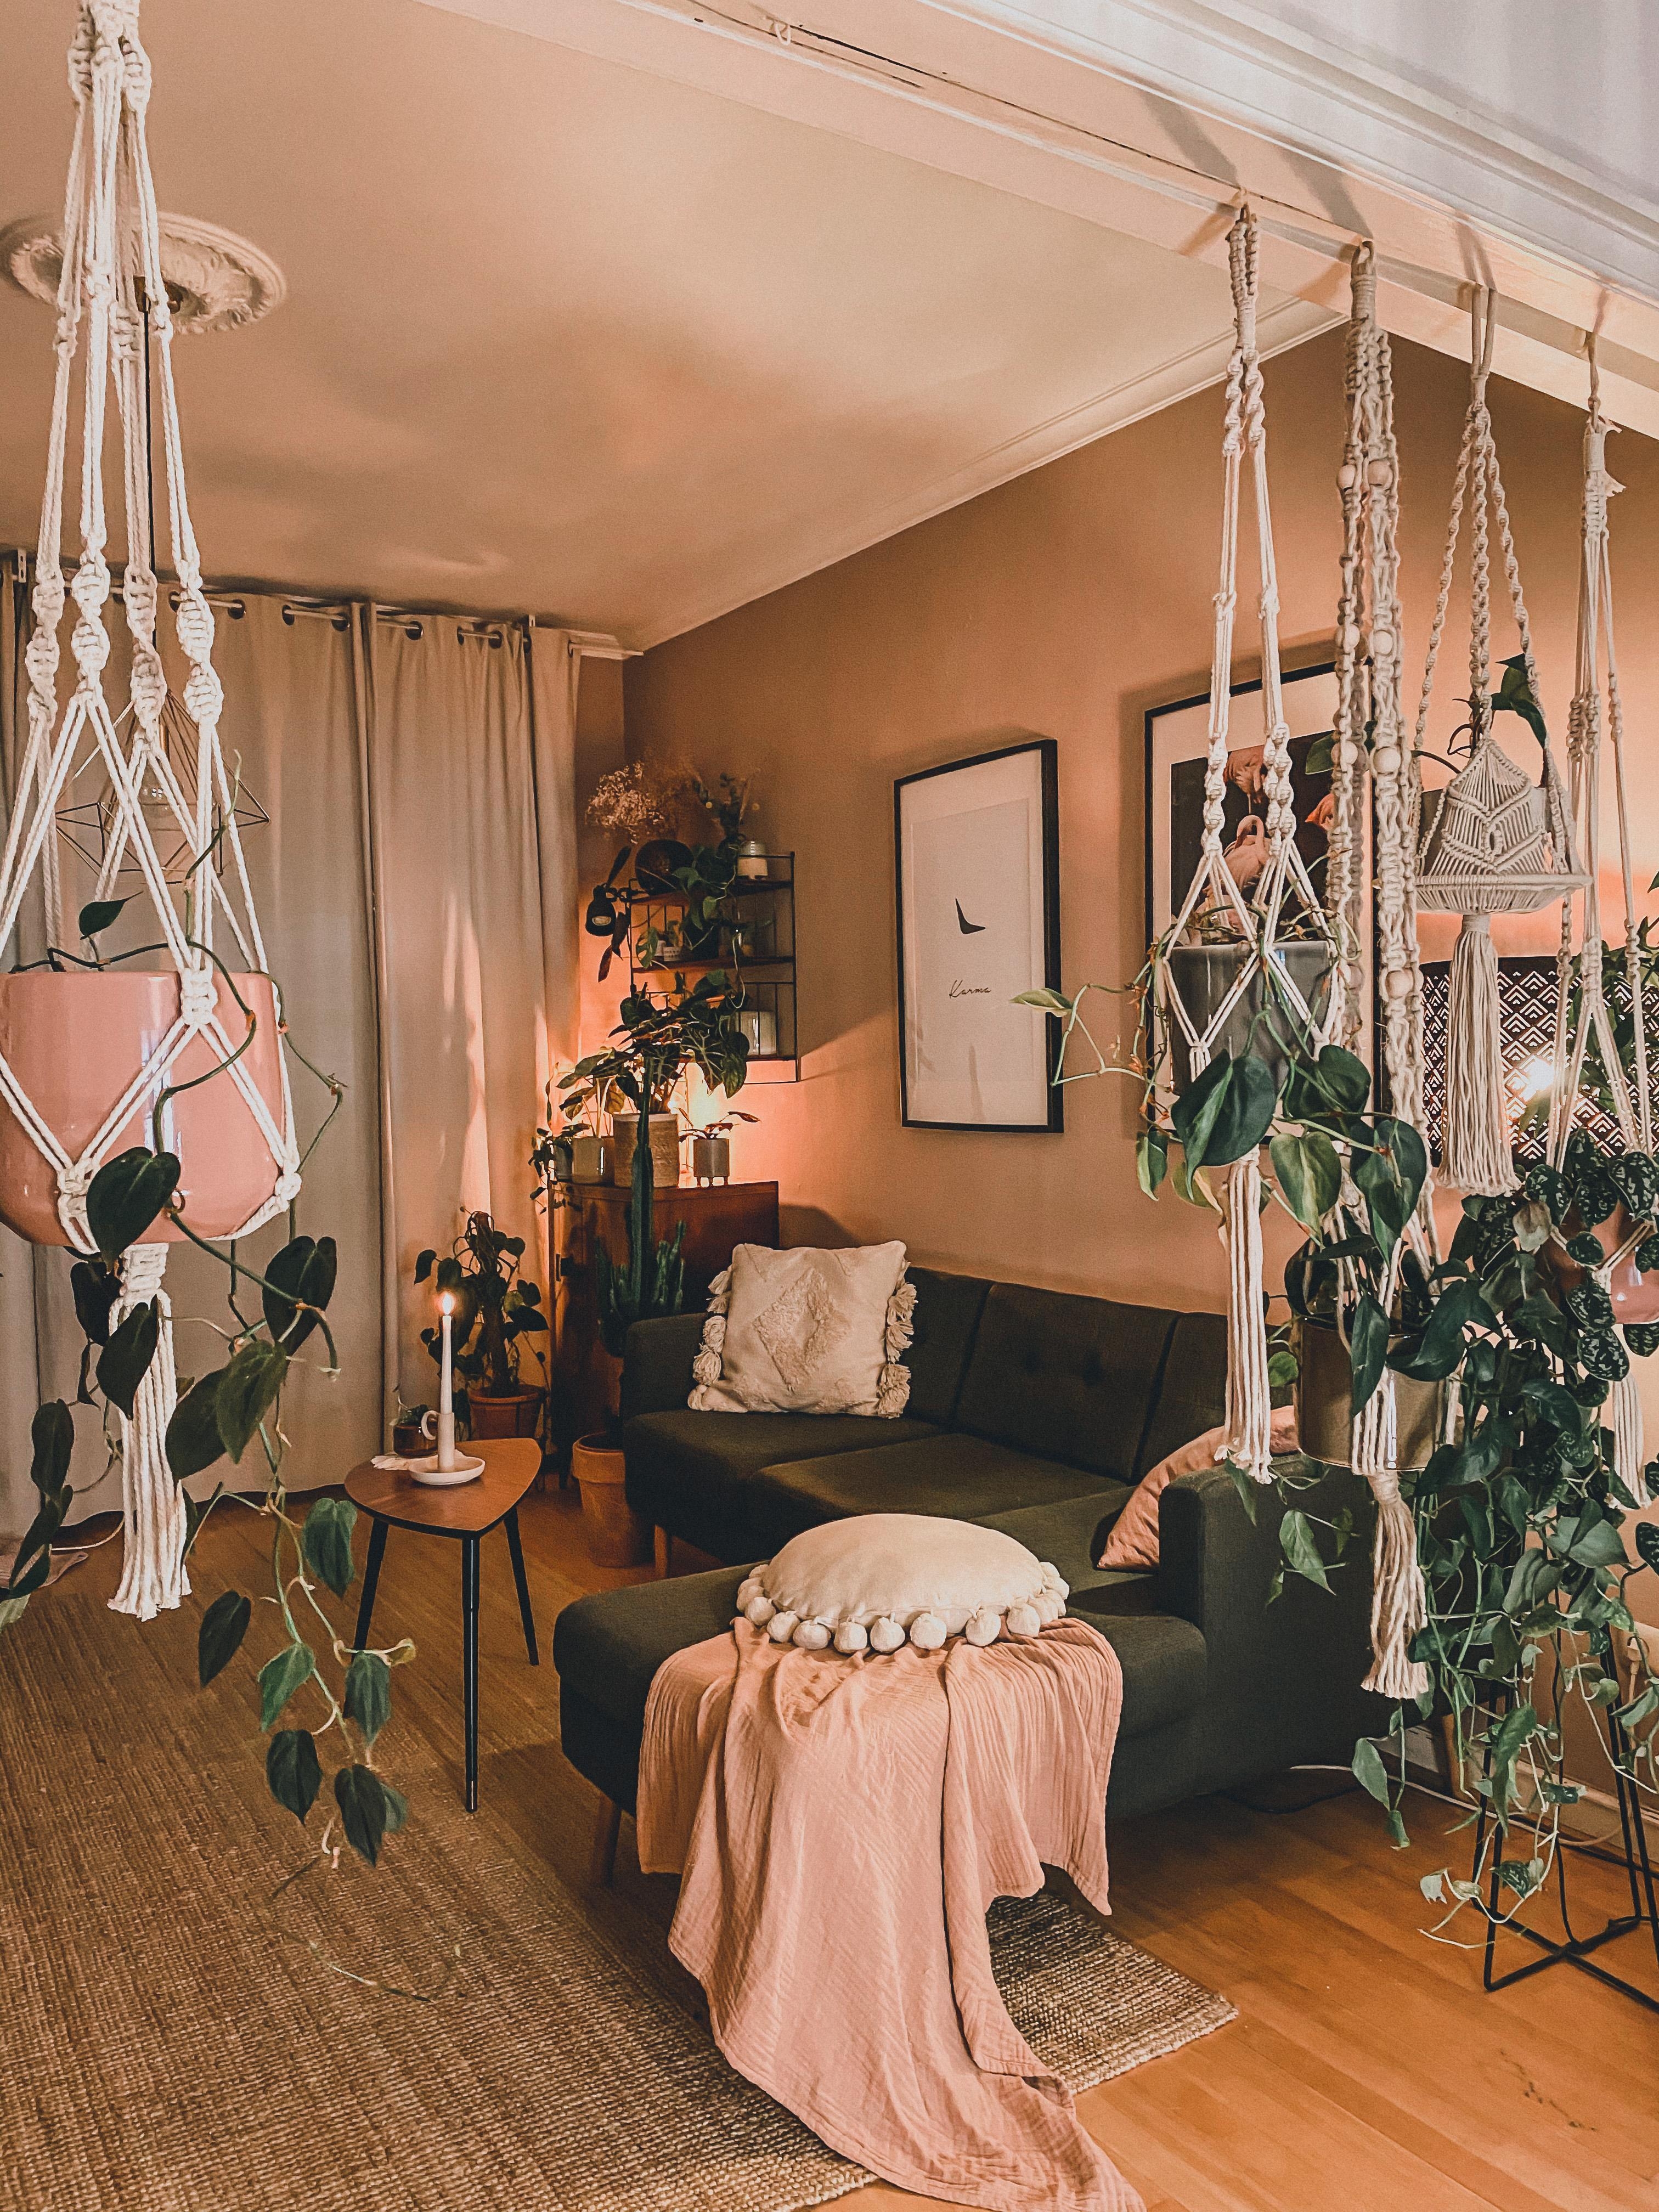 livingroom #interior #planterior #decor #pflanzenliebe